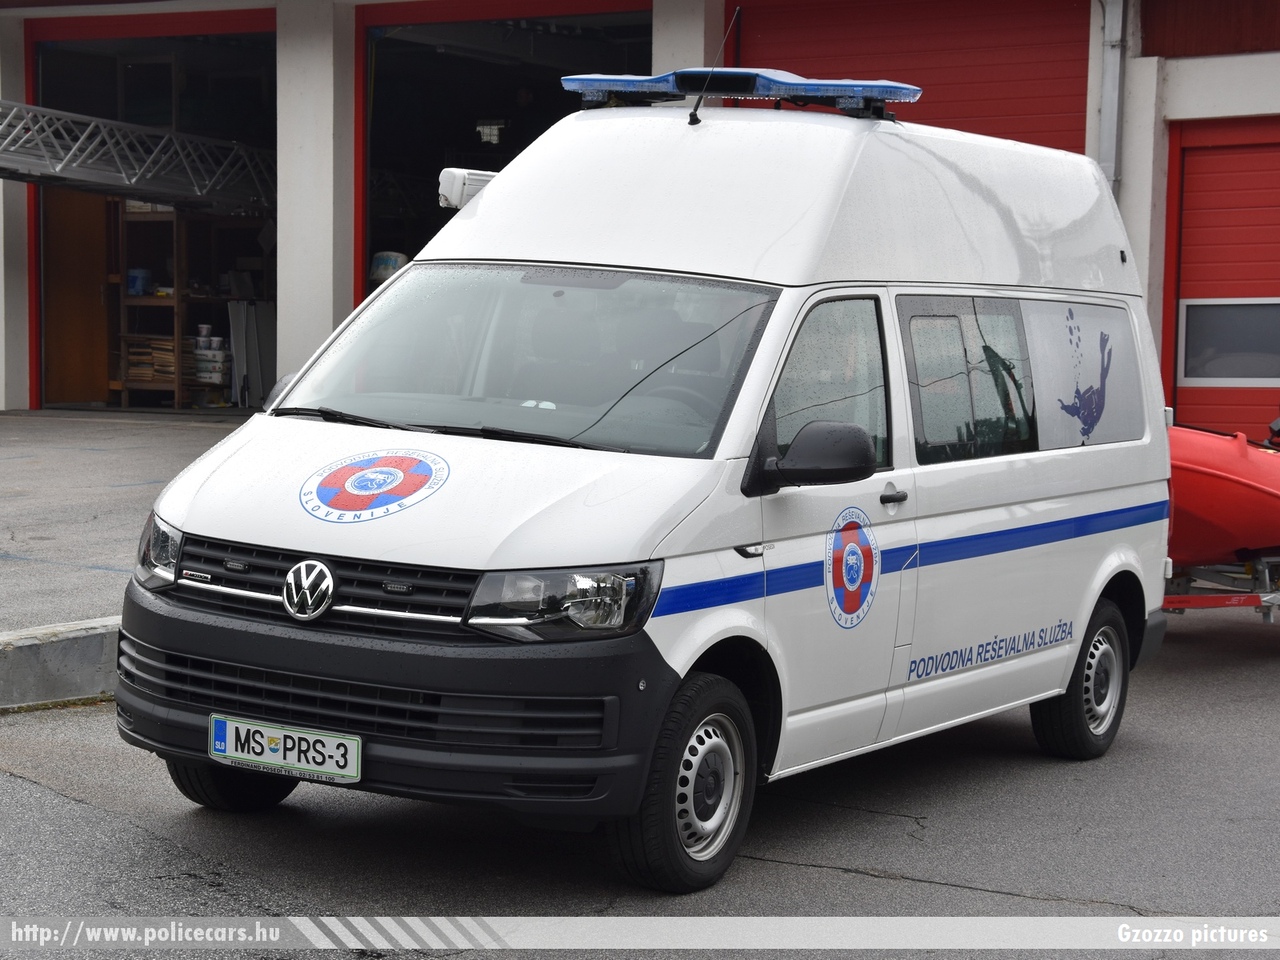 Volkswagen Transporter T6, fotó: Gzozzo pictures
Keywords: szlovén Szlovénia slovenian Slovenia